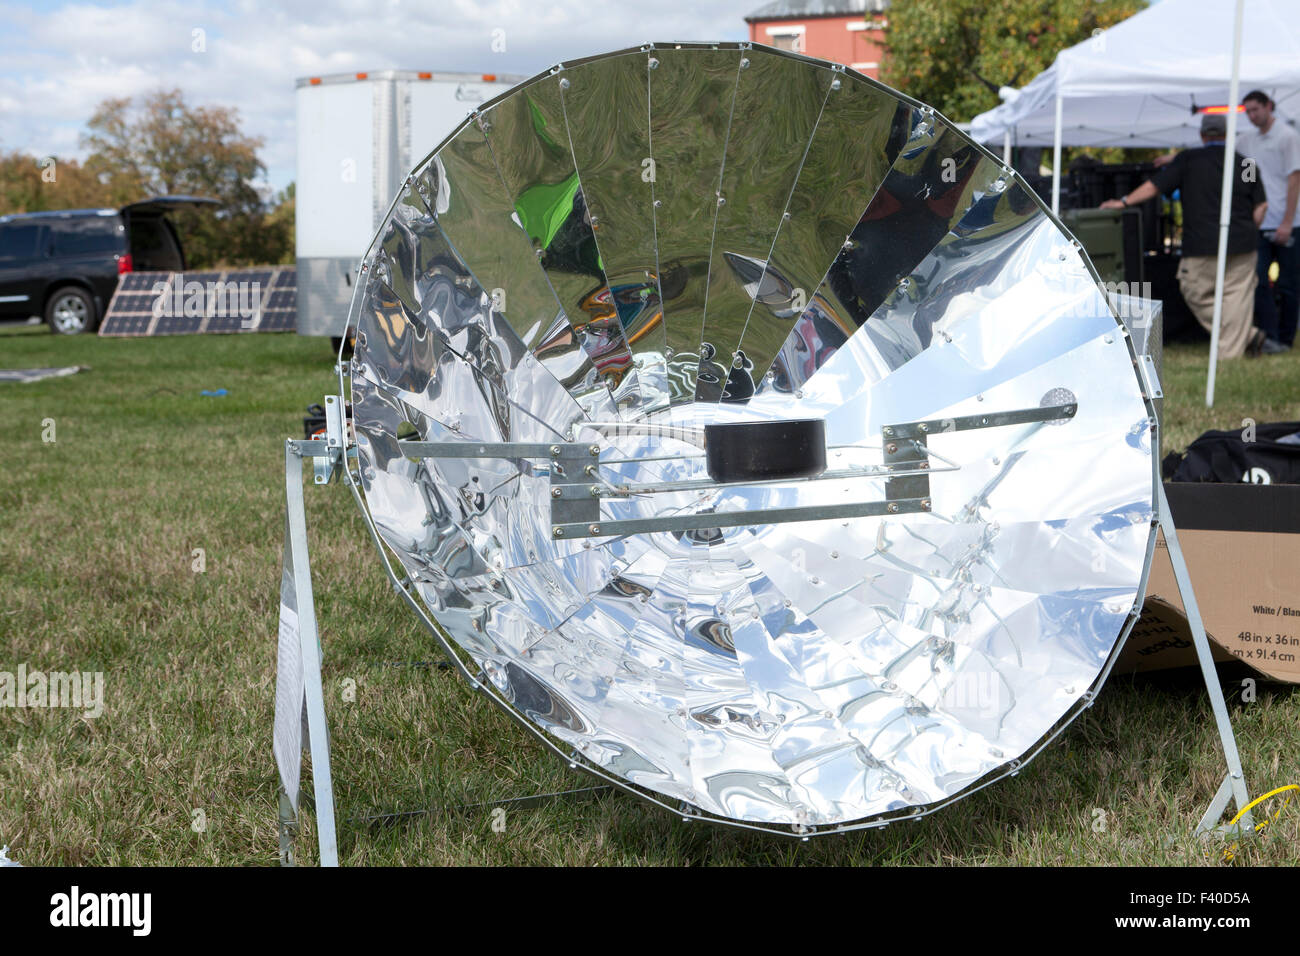 A parabolic solar cooker - USA Stock Photo